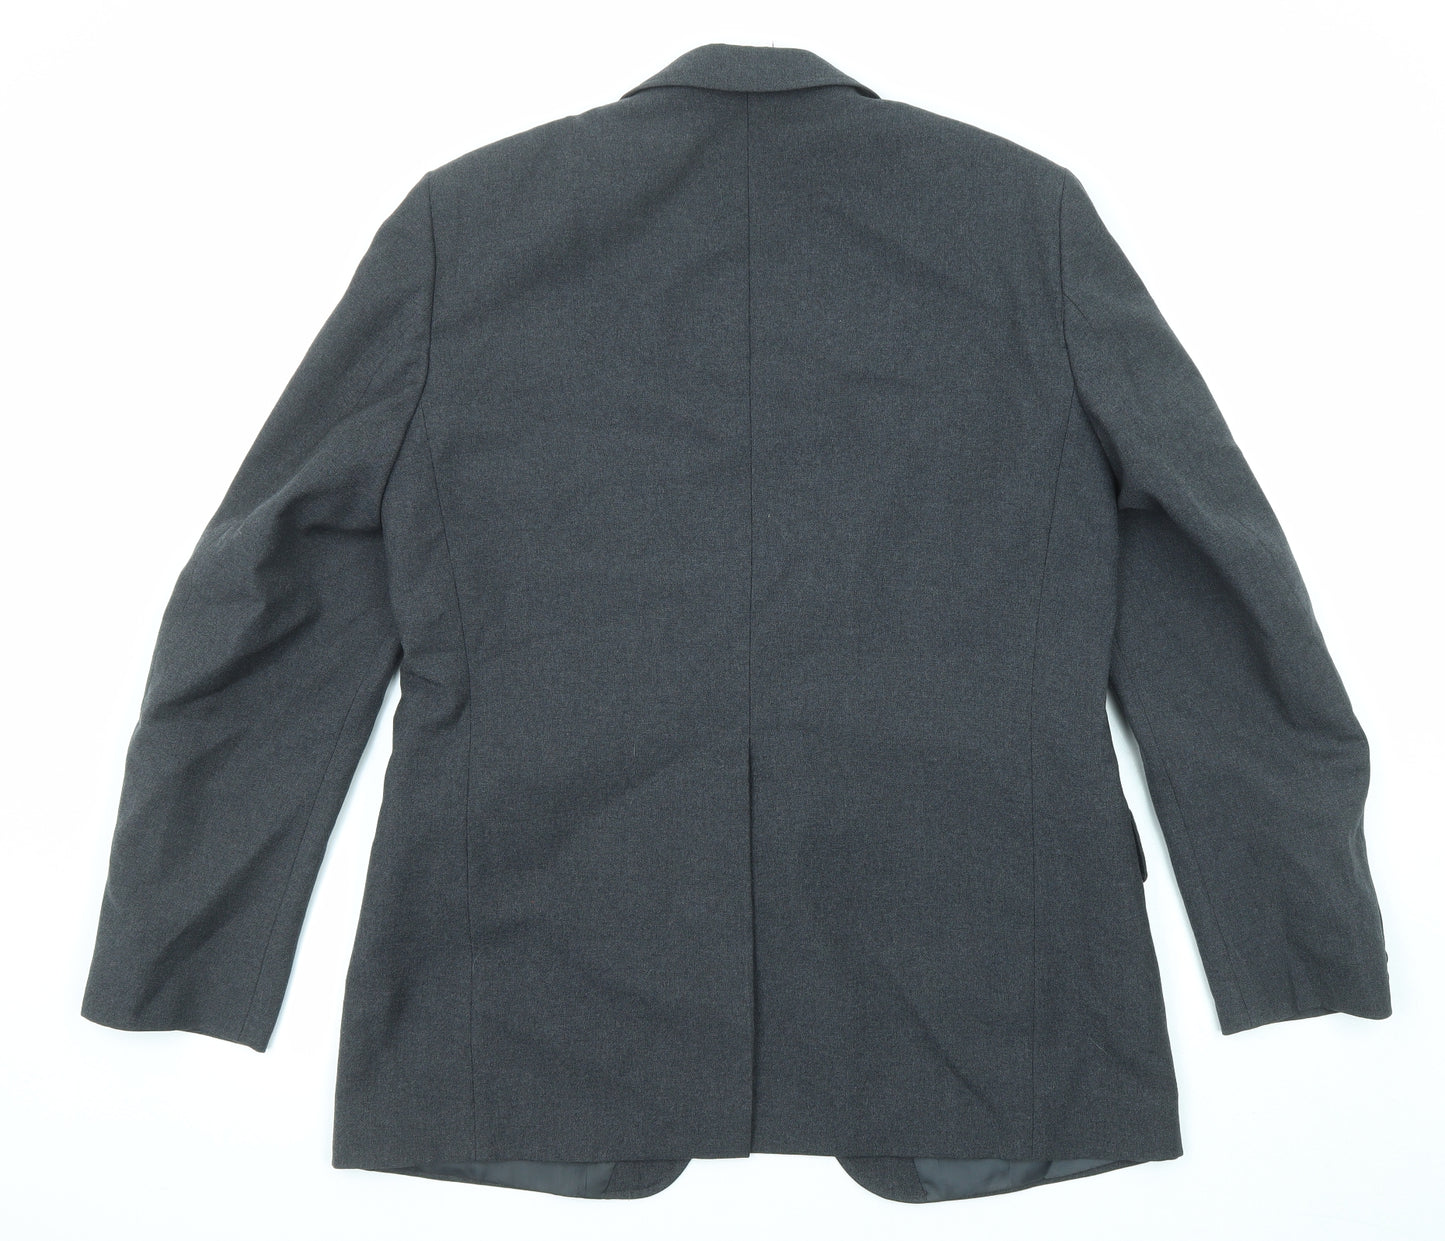 Marks and Spencer Mens Grey Viscose Jacket Suit Jacket Size 42 Regular